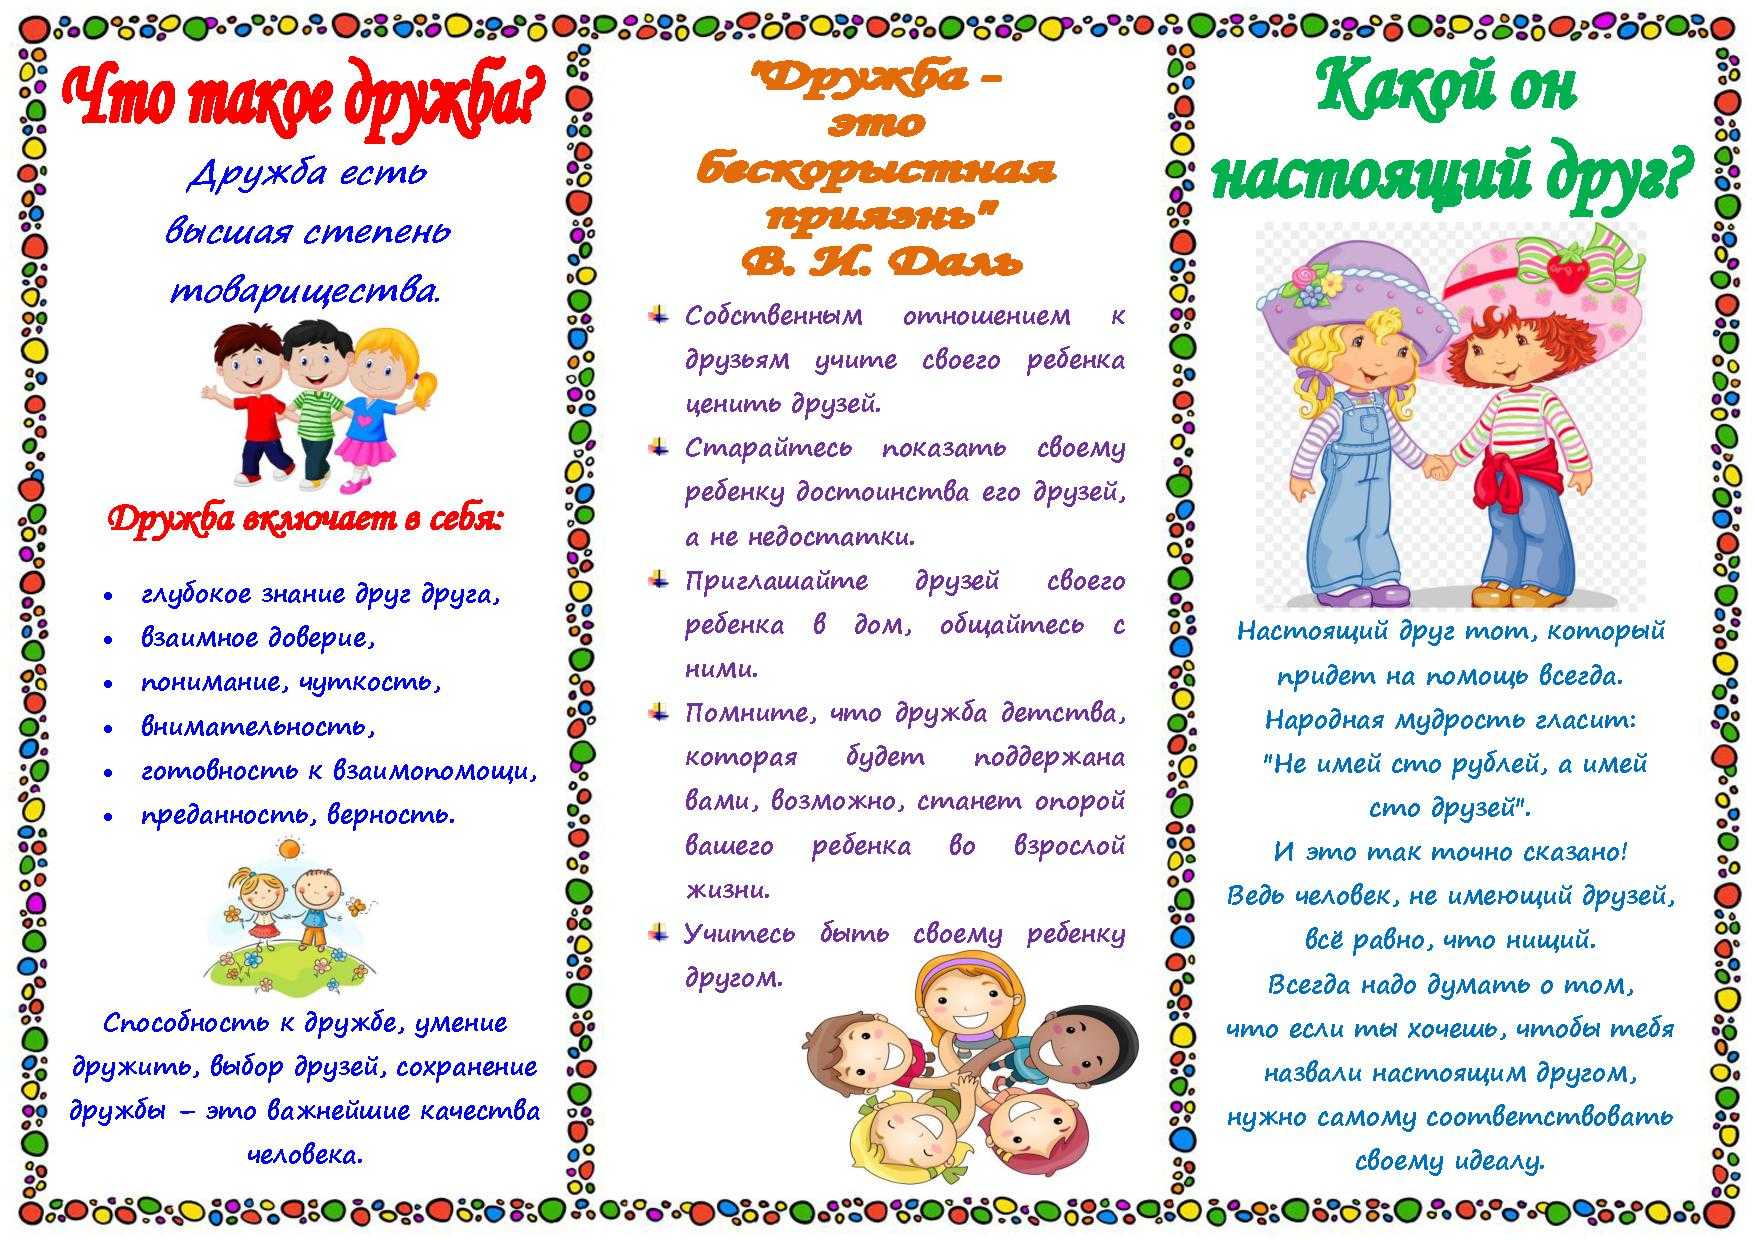 Беседы в средней группе детского сада, картотека с целями по фгос, ситуативный разговор, конспекты на различные темы | rucheyok.ru